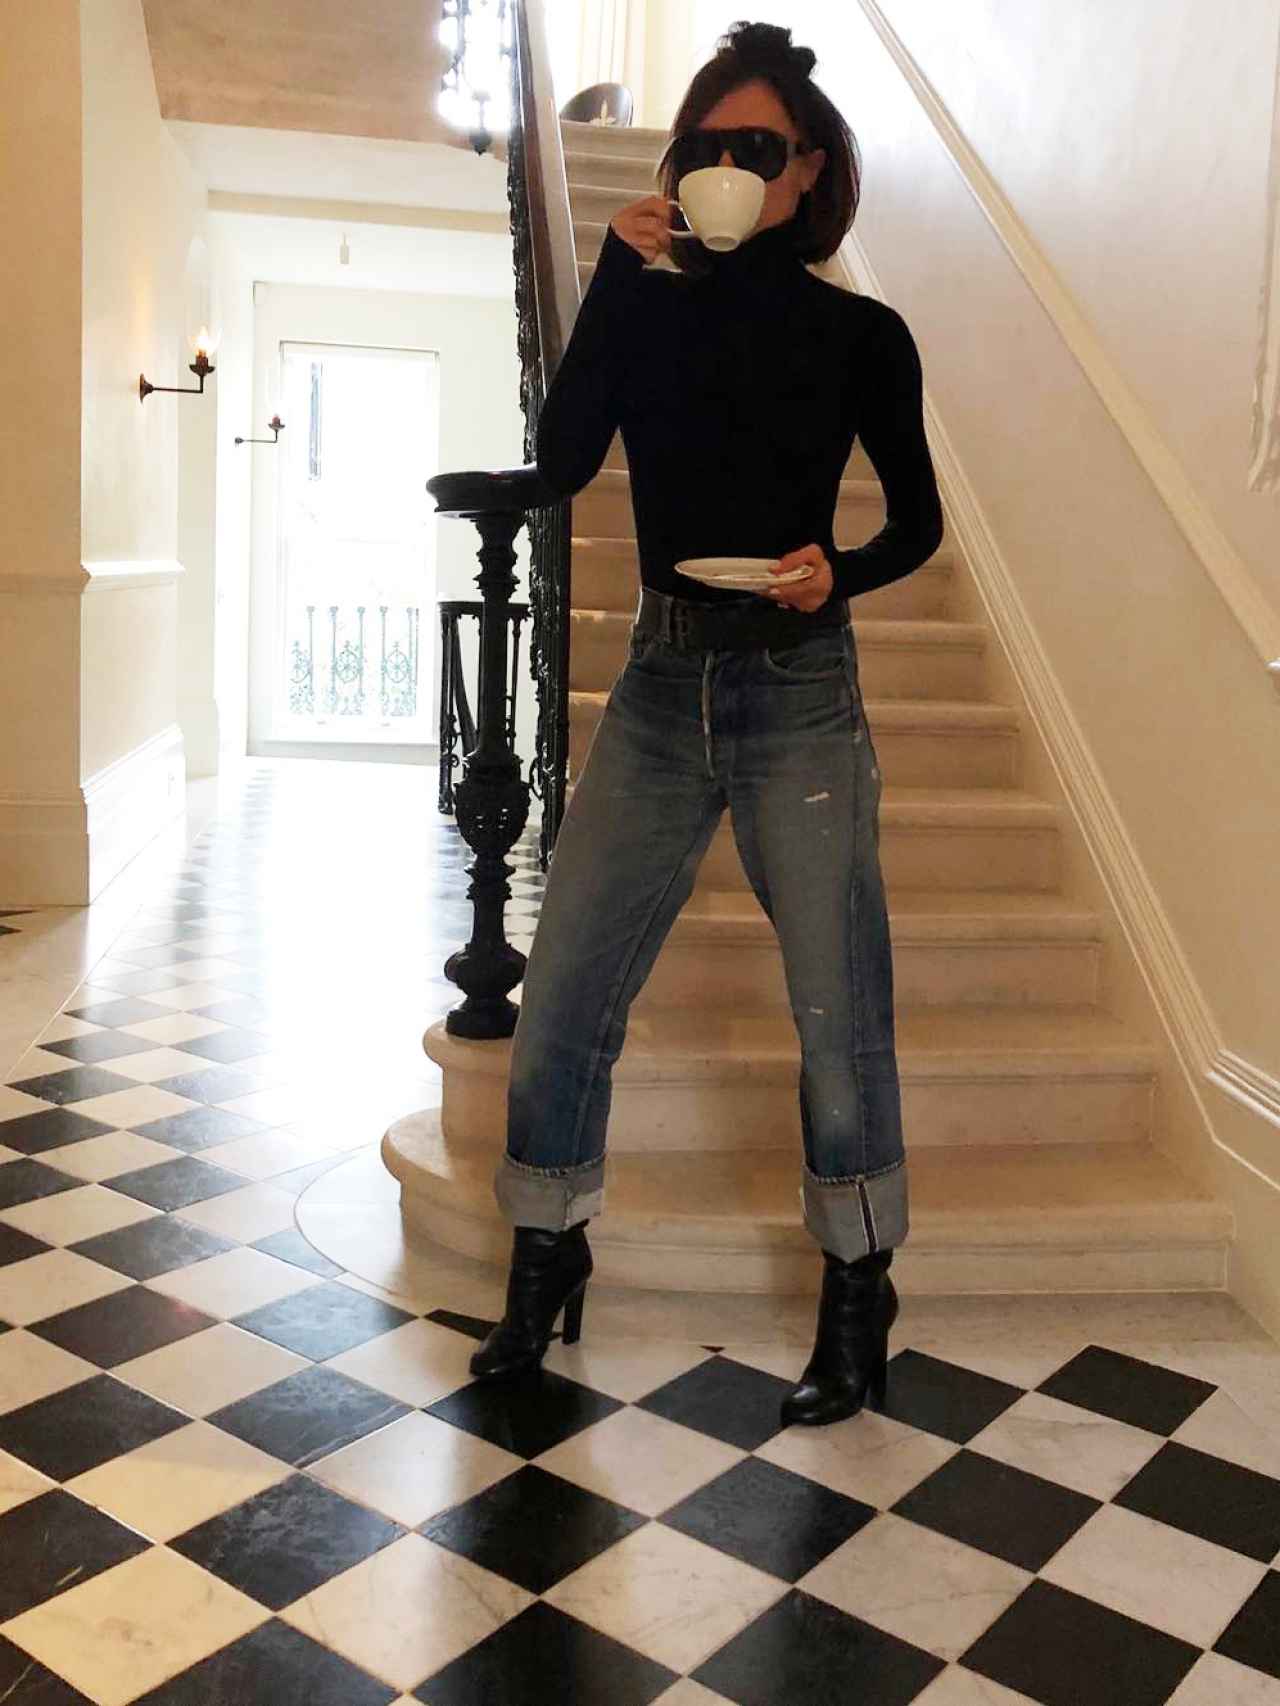 Victoria Beckham, en el interior de su casa, junto a las escaleras de mármol.